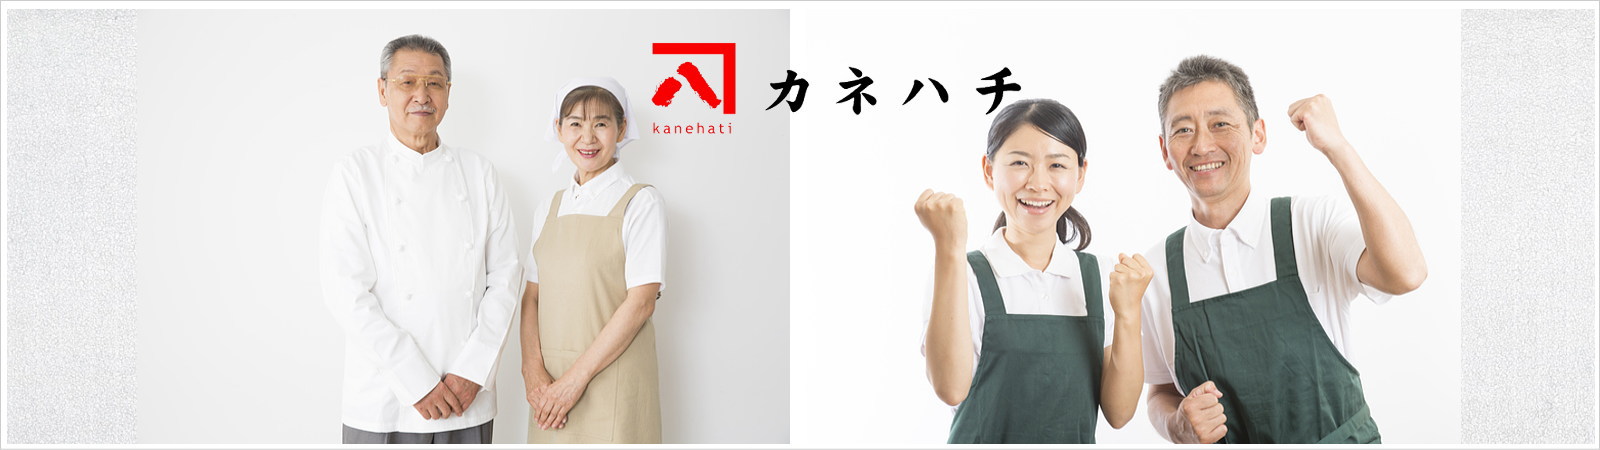 カネハチ有限会社の採用情報|カネハチはお寿司・天ぷら・お弁当を中心としたお惣菜の製造販売会社です。